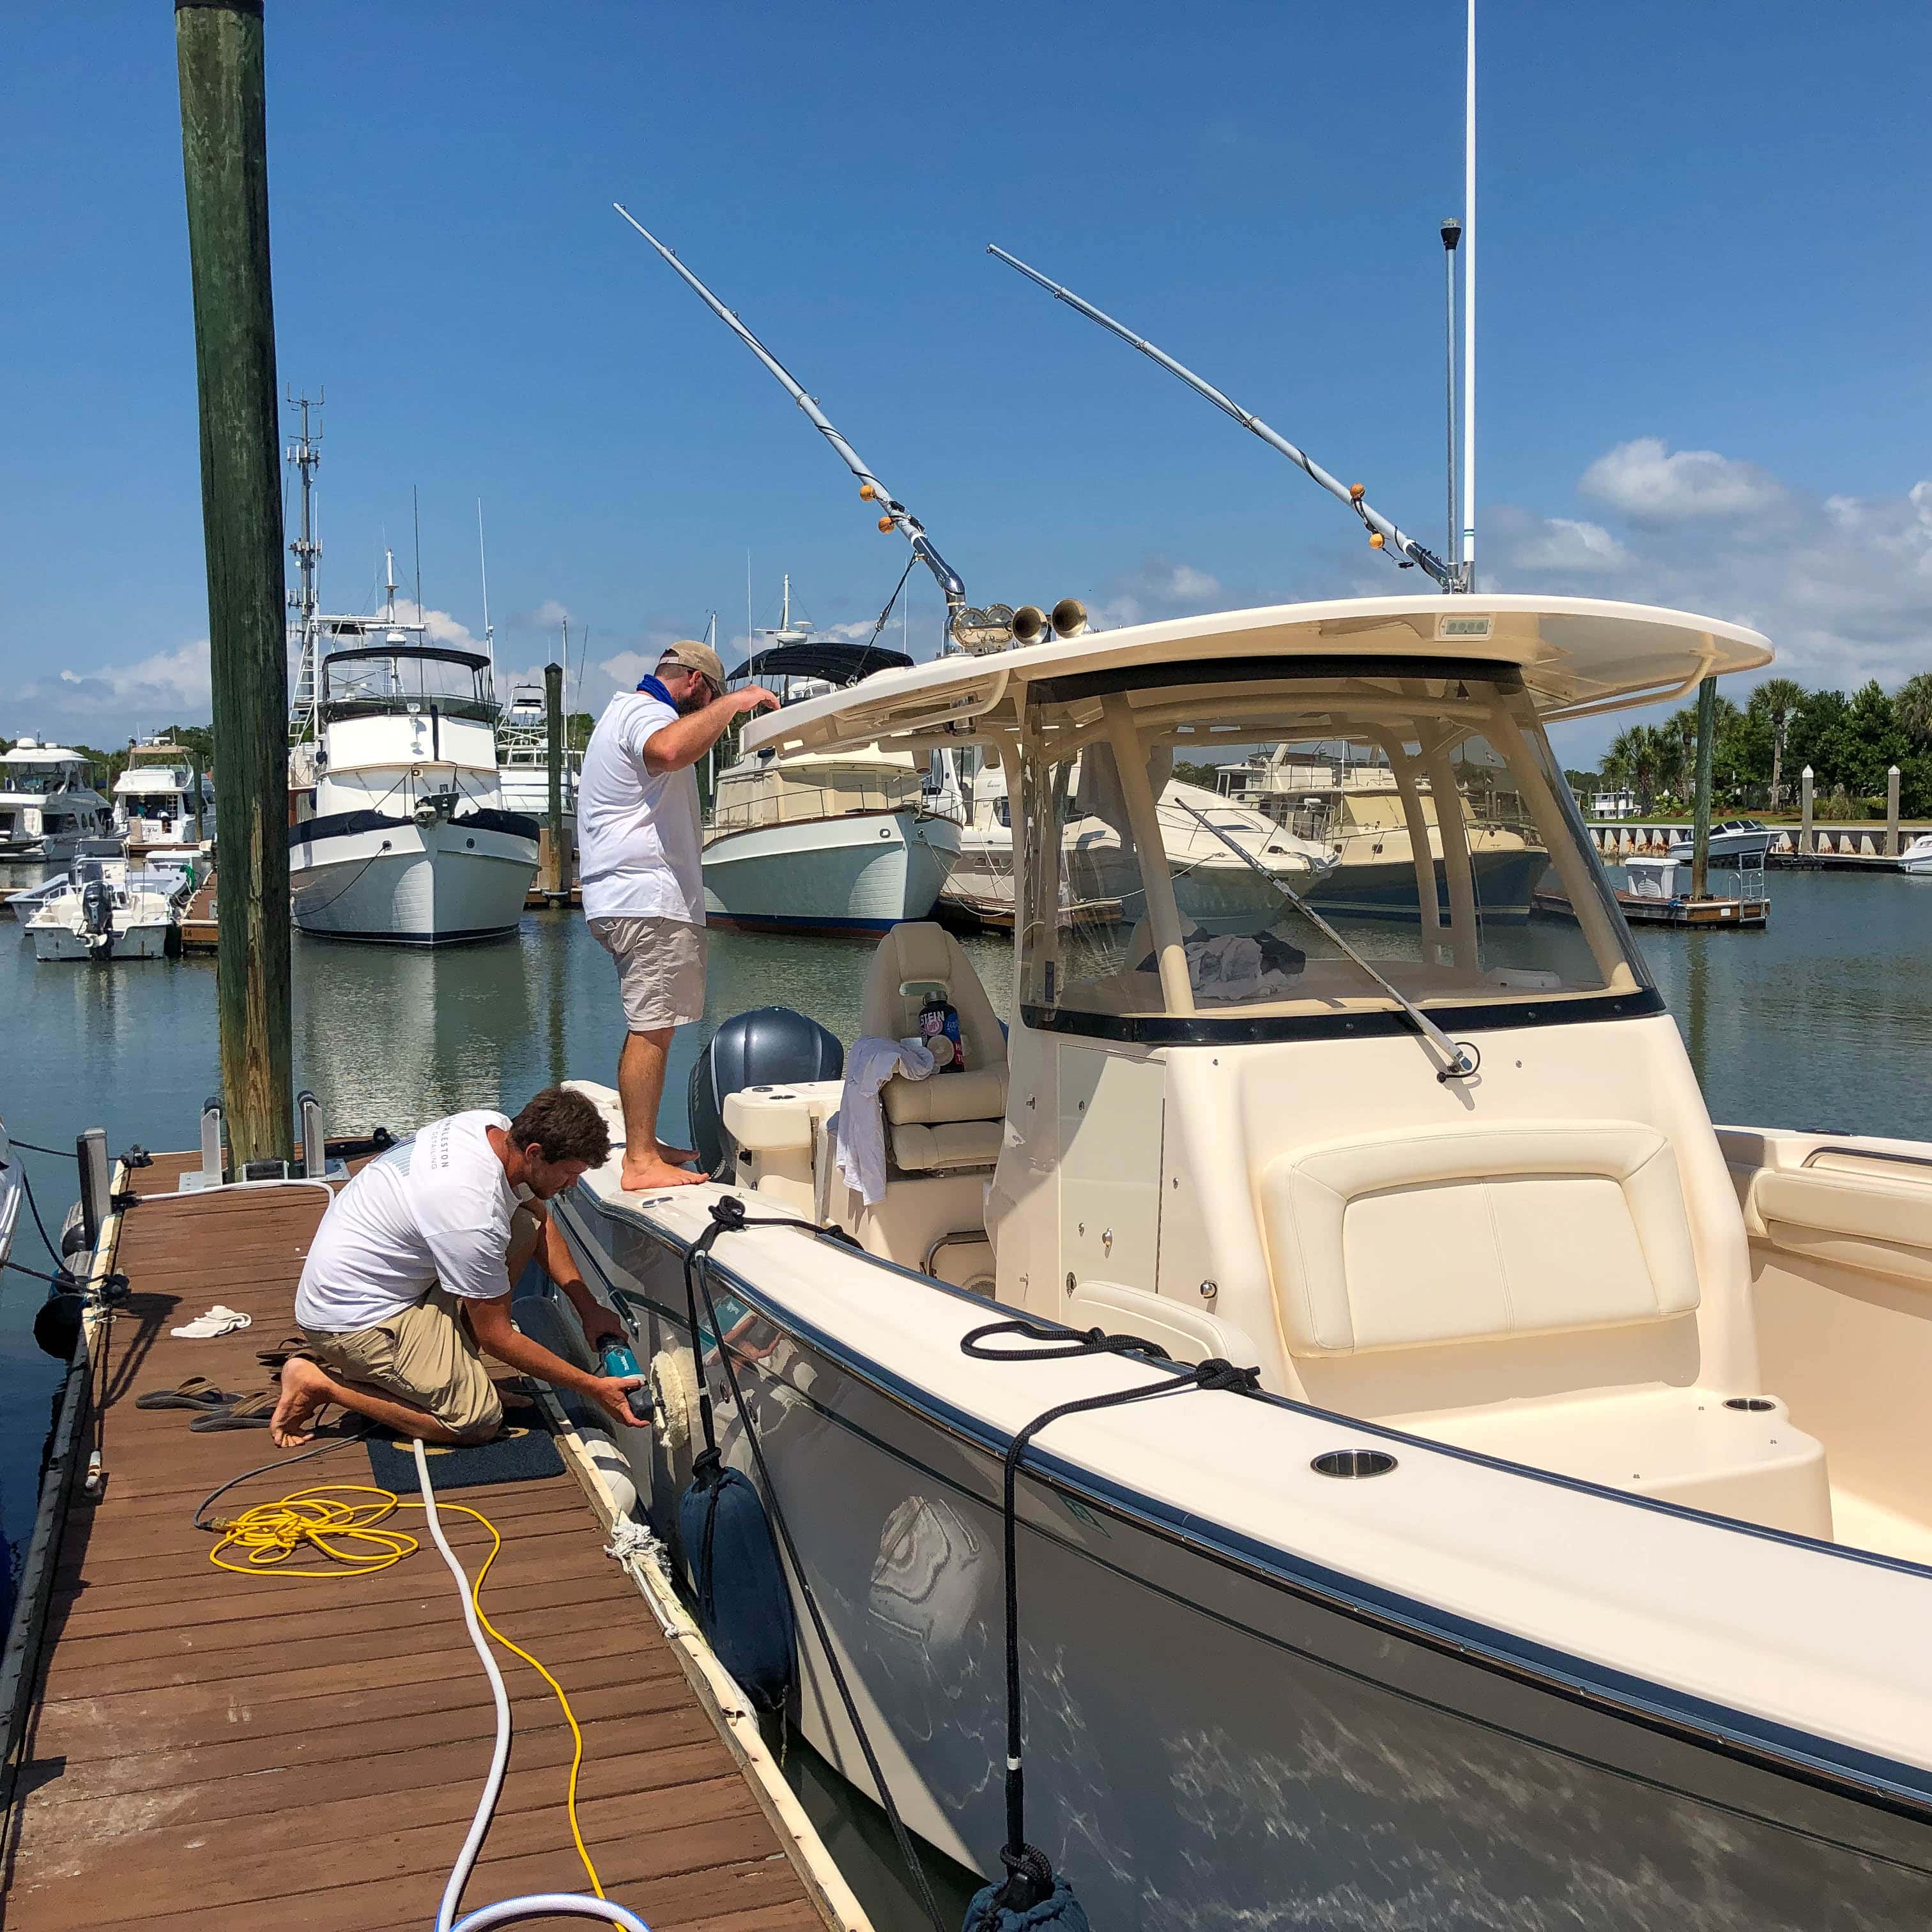 Charleston Boat Detailing - Isle of Palms, SC, US, mobile marine mechanic